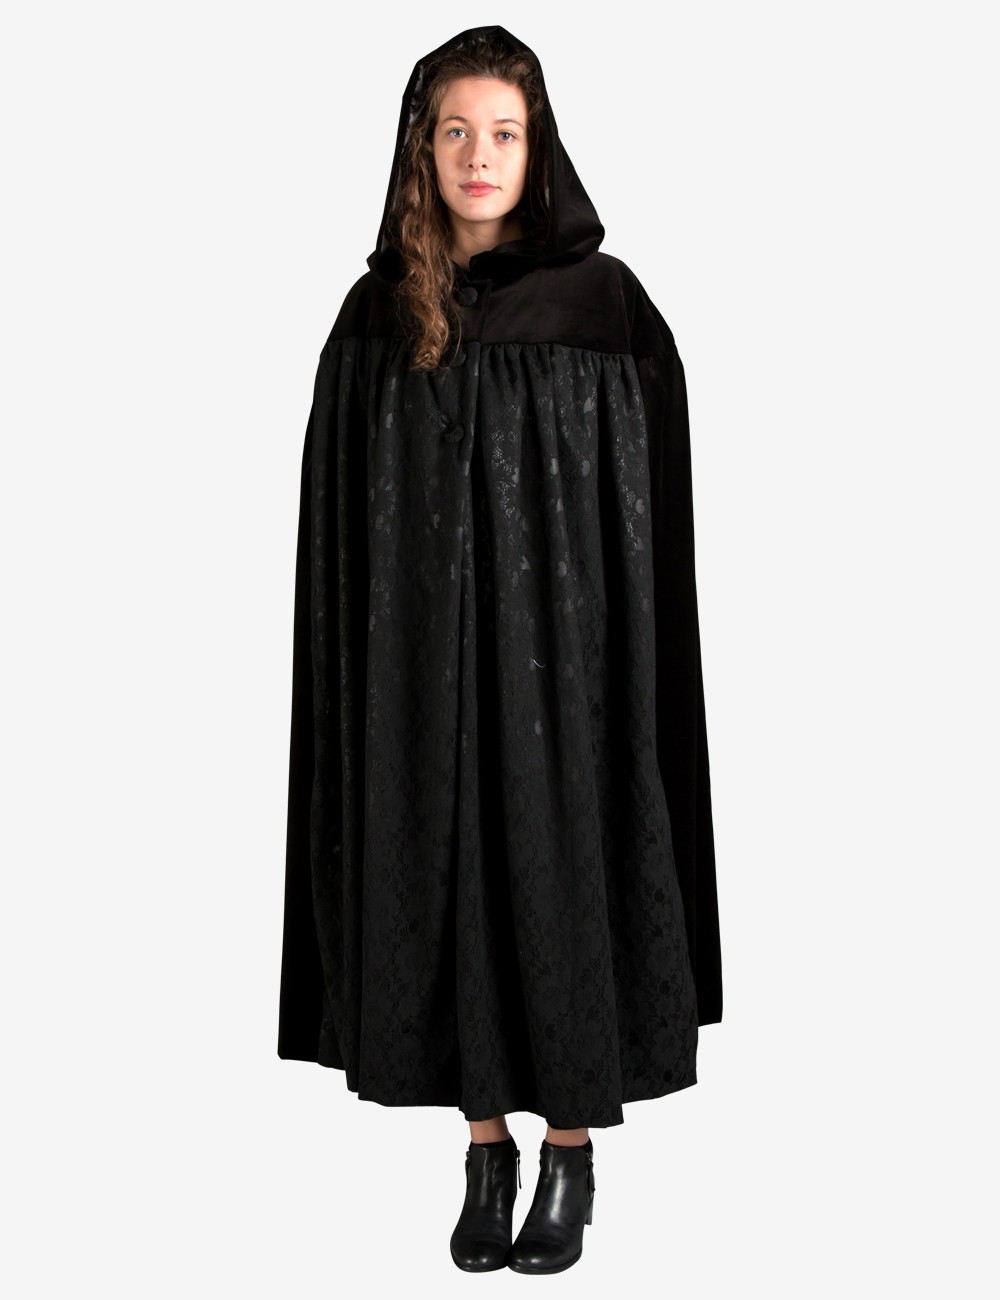 Femme Velours Noir à Capuche Cape Manteau Costume Halloween Robe Fantaisie Taille Unique 